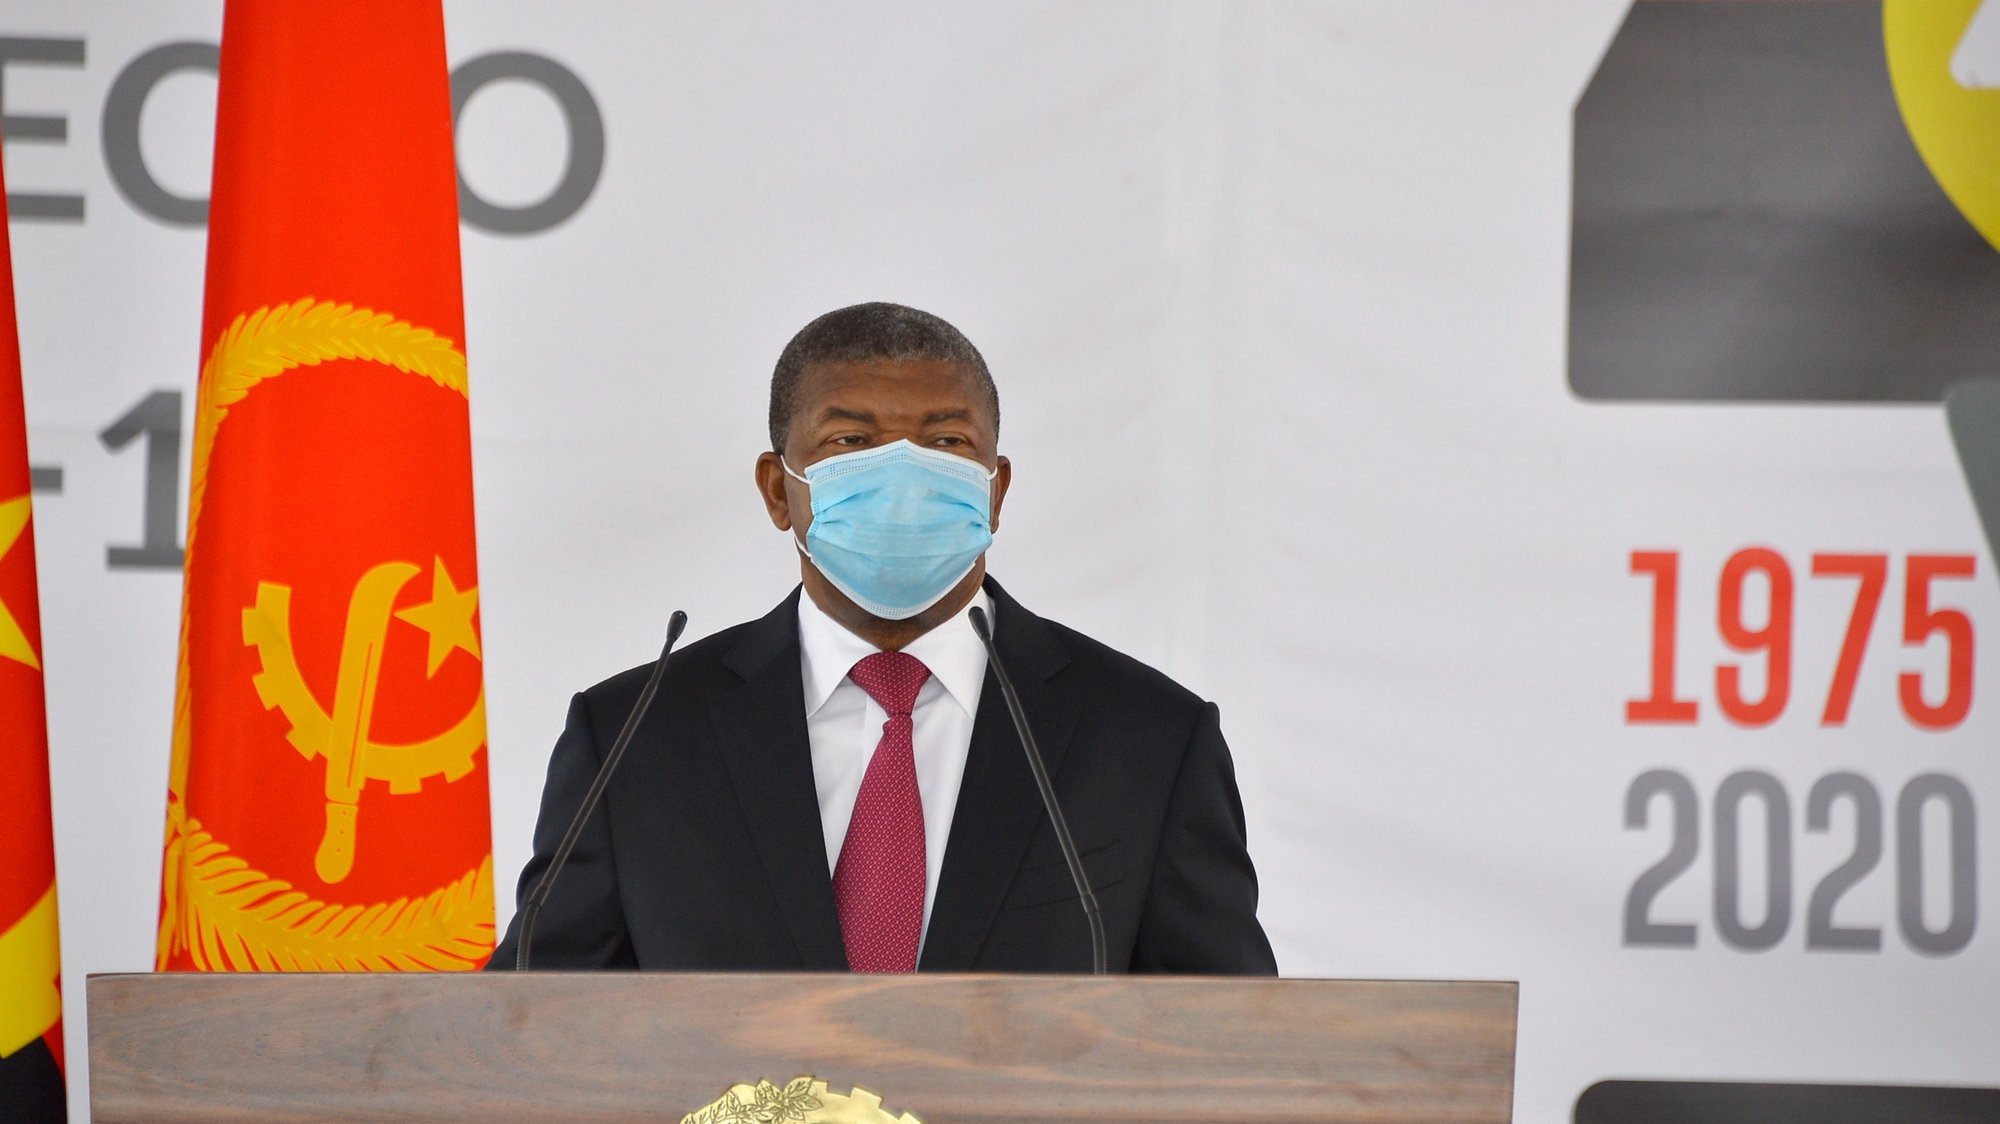 O Presidente de Angola, João Lourenço, durante uma cerimónia que serviu para homenagear as categorias profissionais que se têm destacado na luta contra a pandemia da covid-19, Luanda, Angola, 10 de novembro de 2020.  LUSA